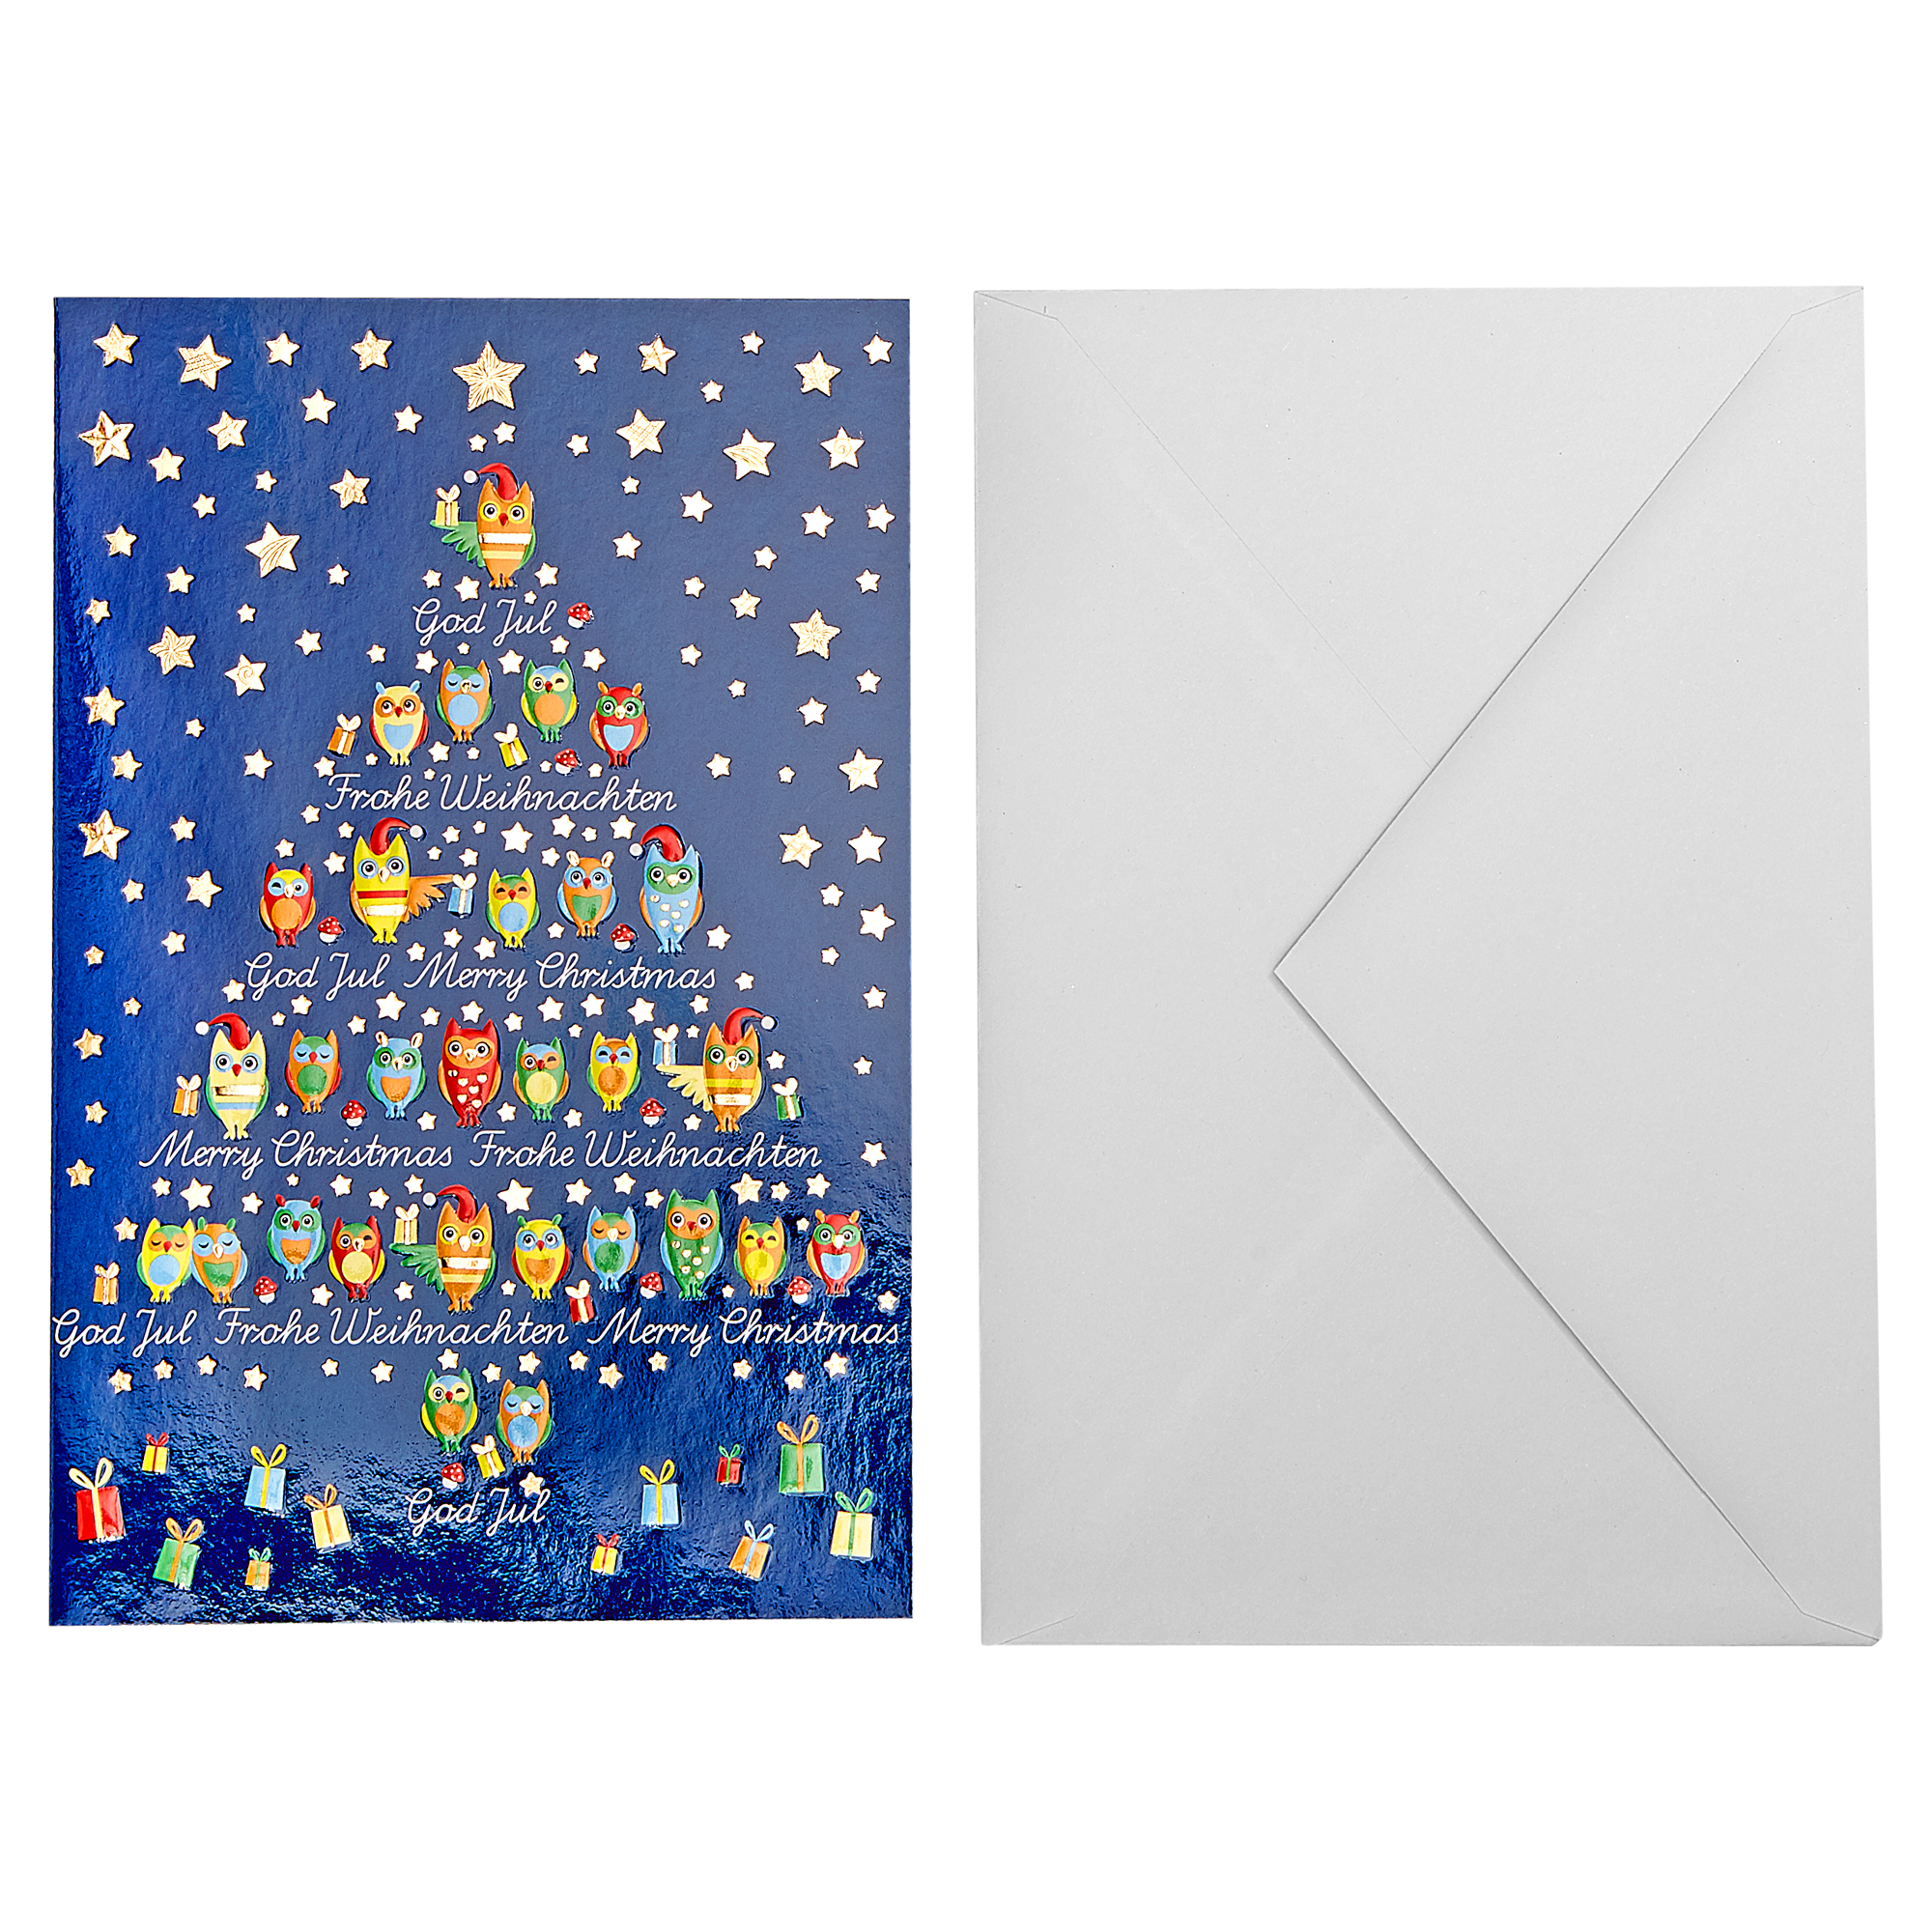 Weihnachtskarte blau/rot mit Umschlag + product picture